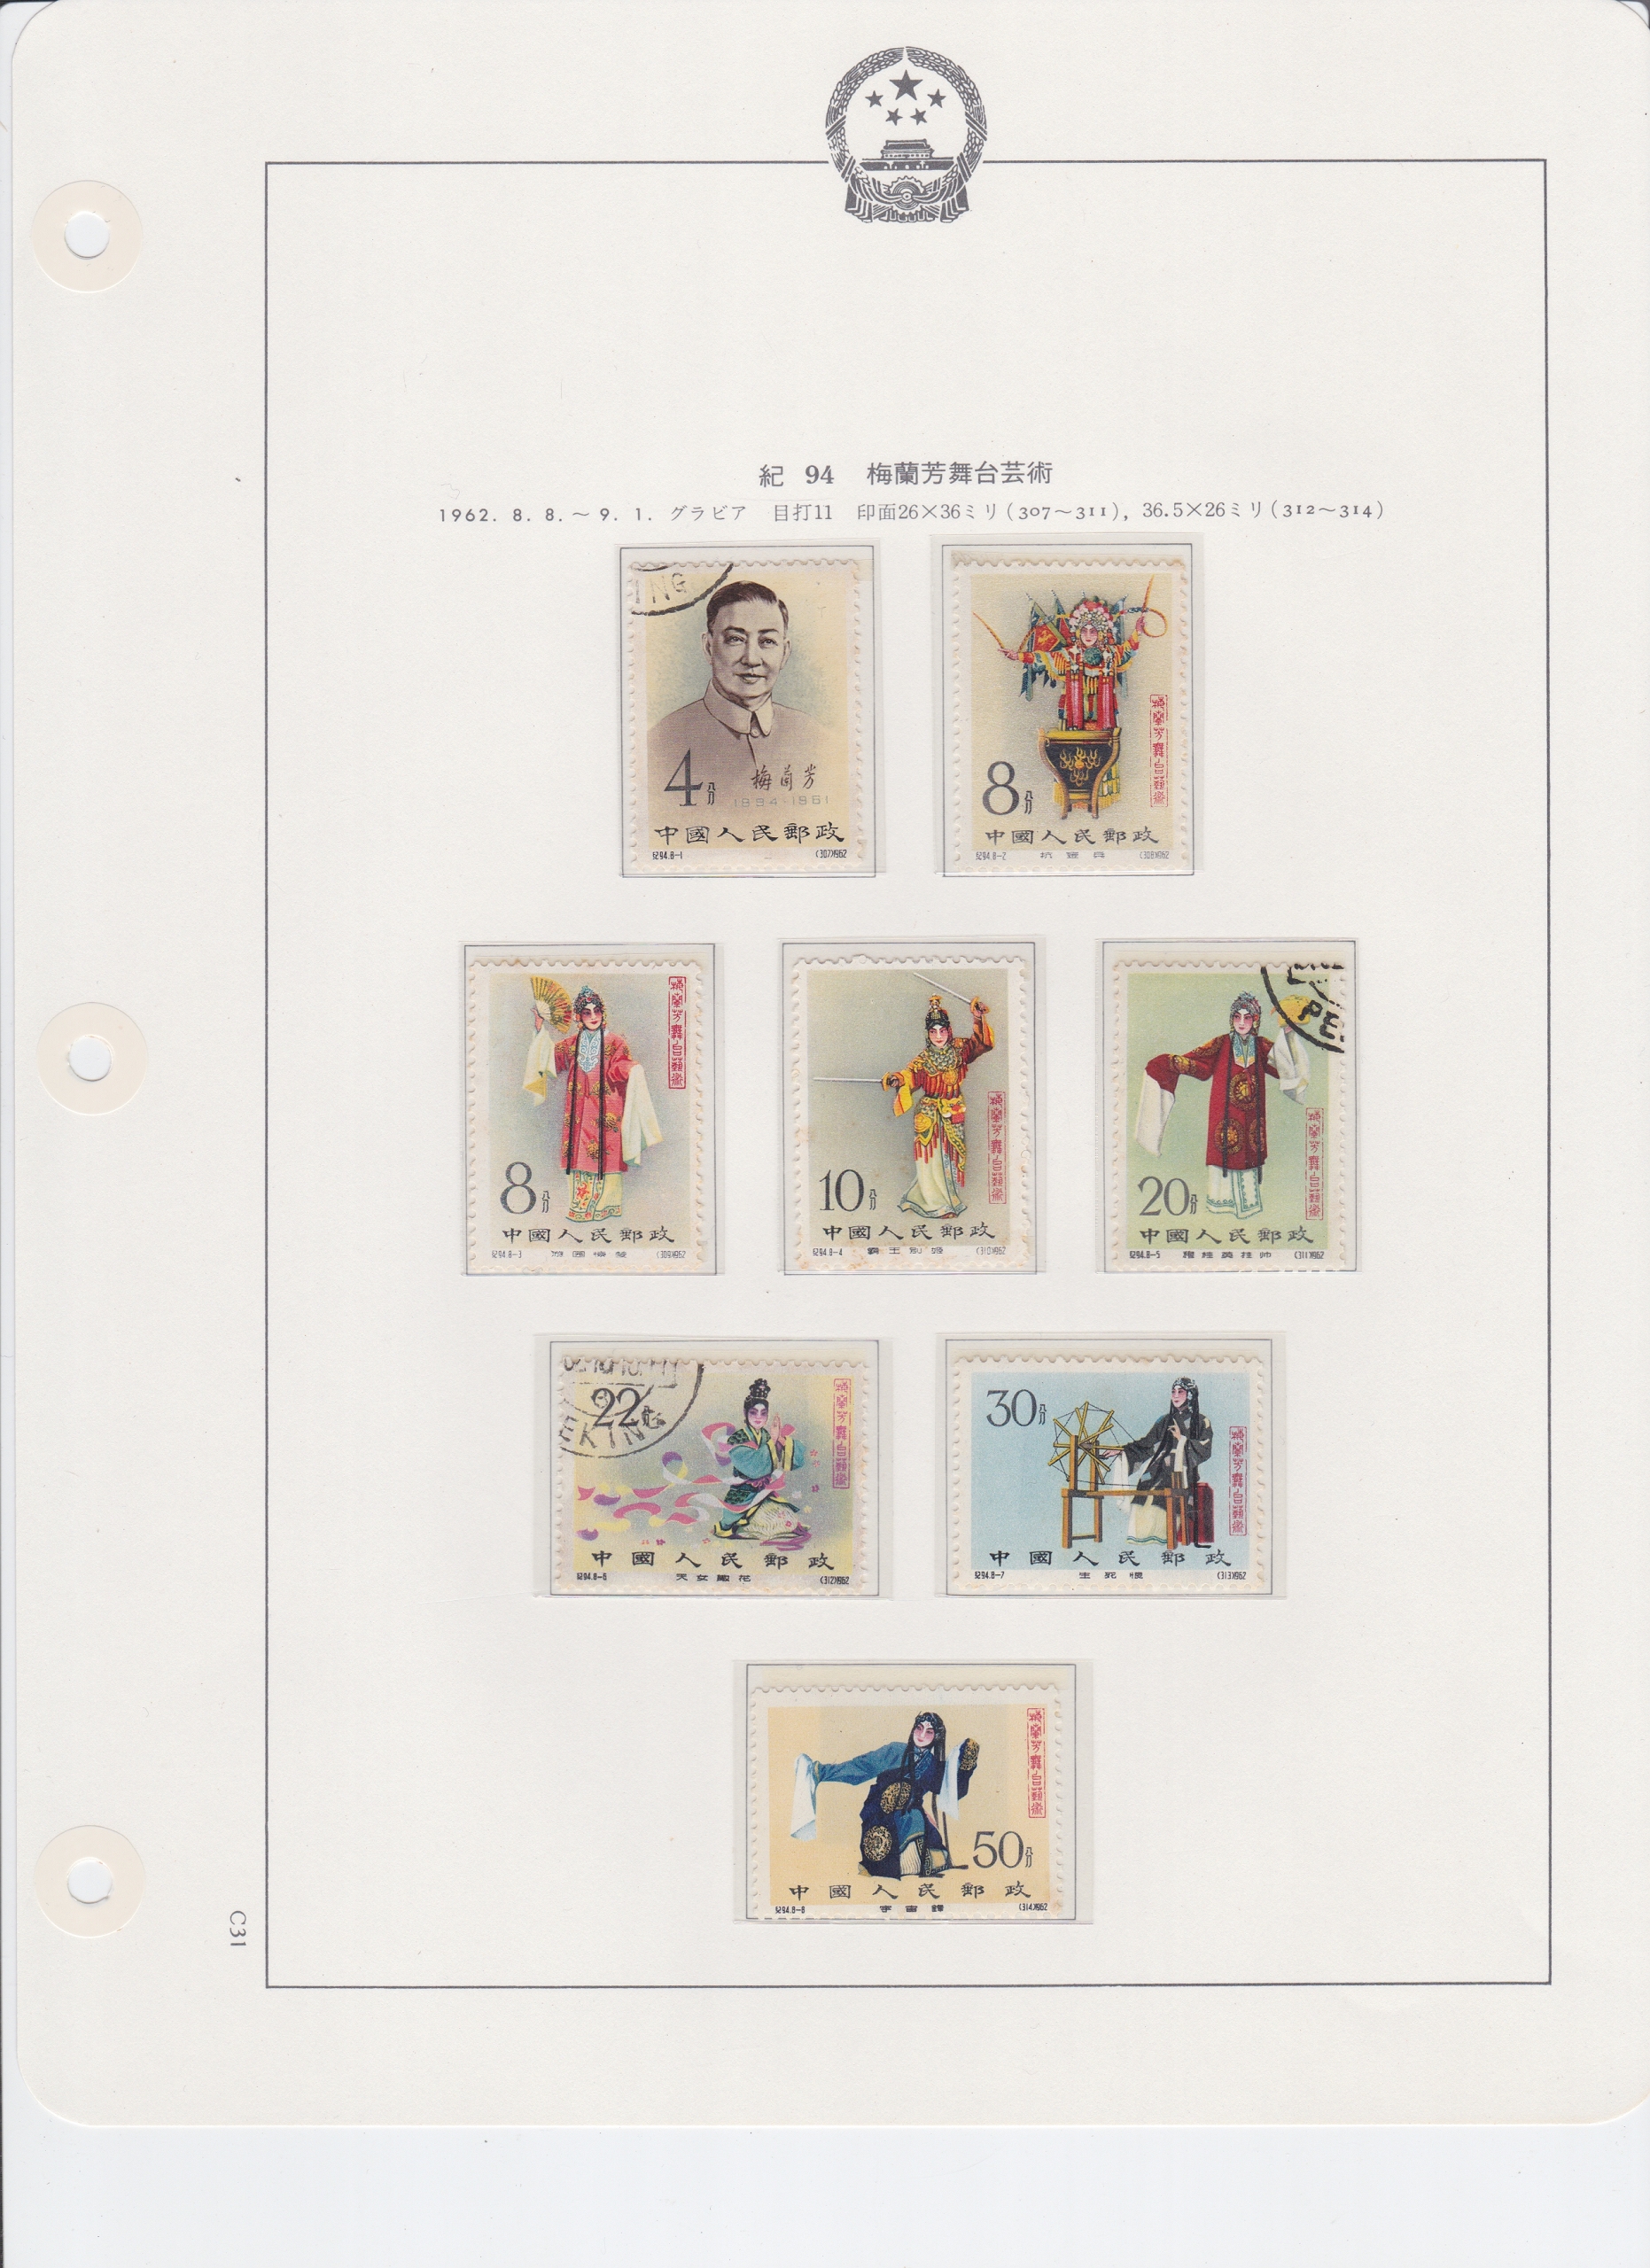 欲しいの 中国切手 - 消印済 紀94「梅蘭芳舞台芸術」5種 1962年